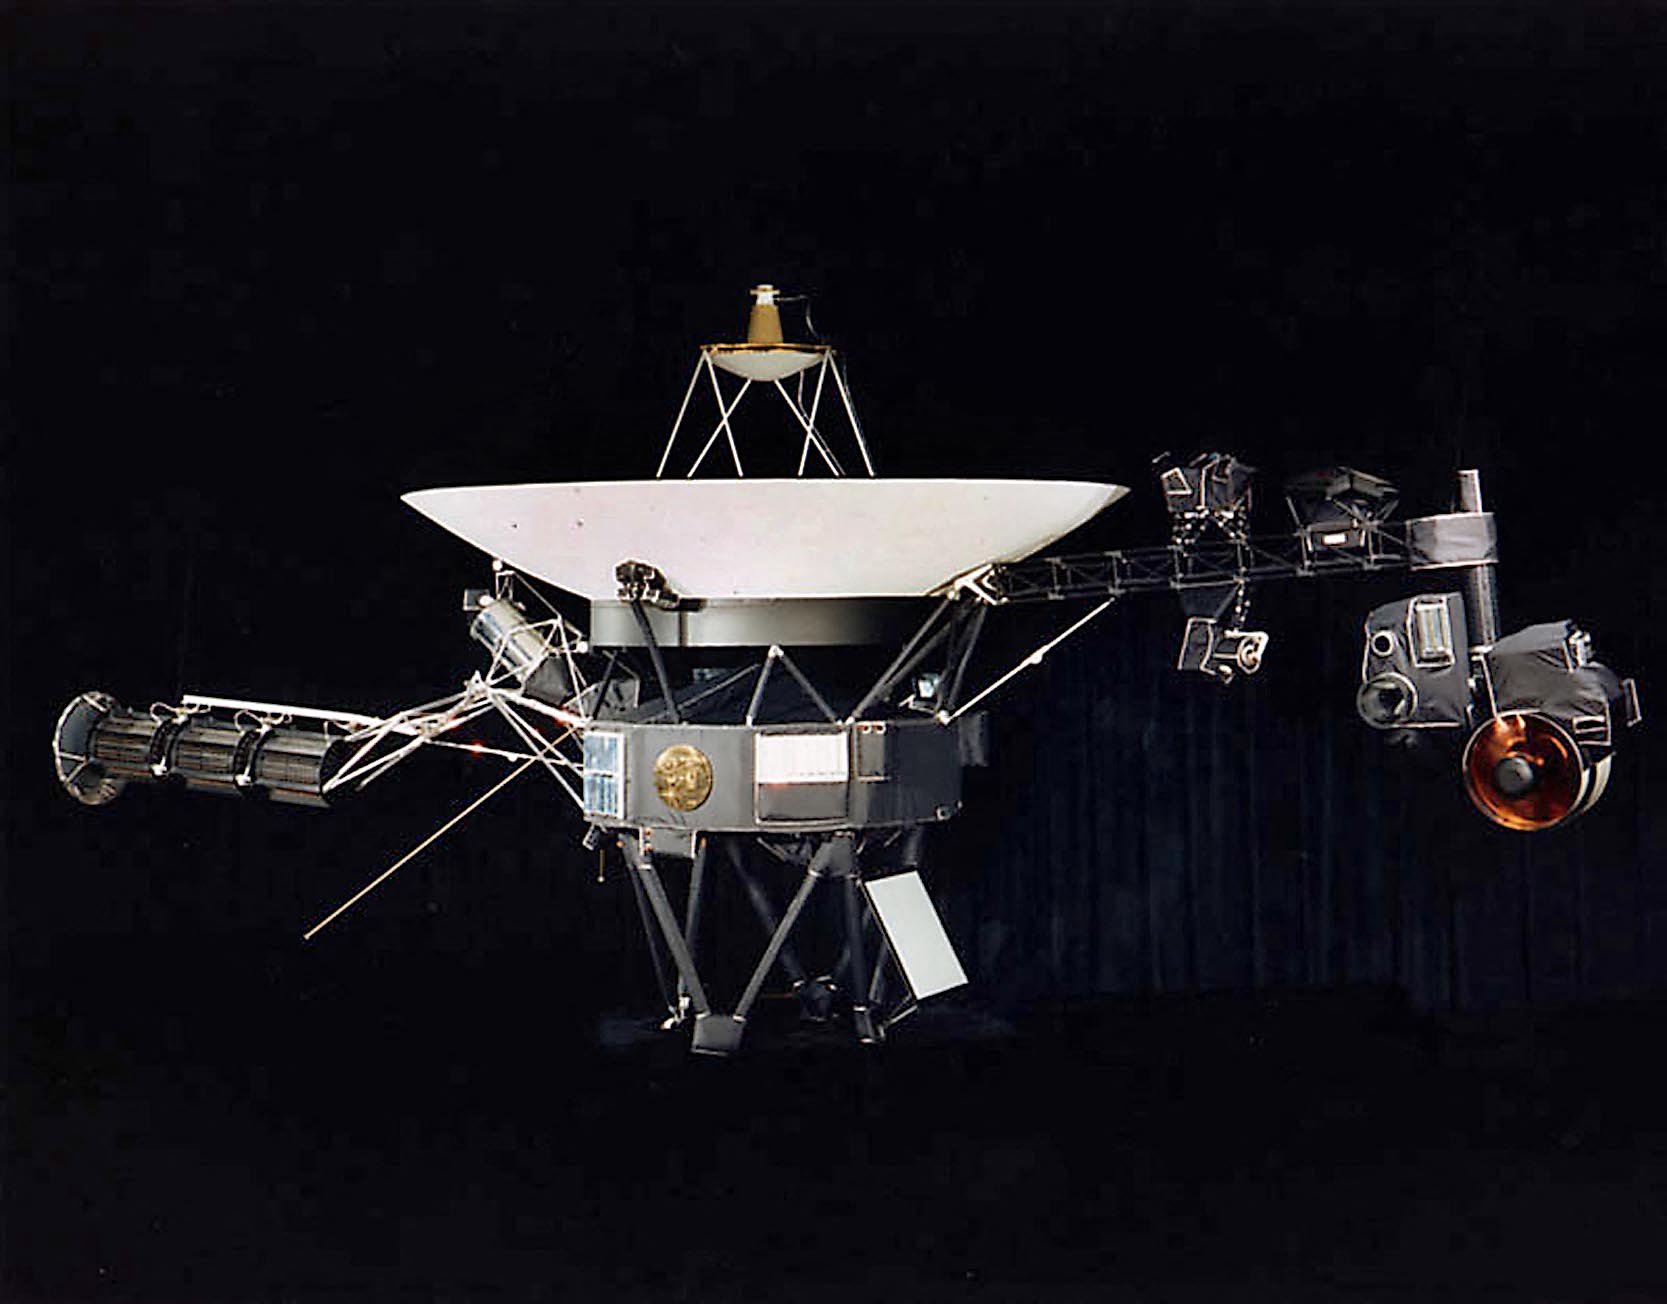 ¡Milagro espacial! Voyager 2 envía 'latido' desde 19,900 millones de km de la Tierra